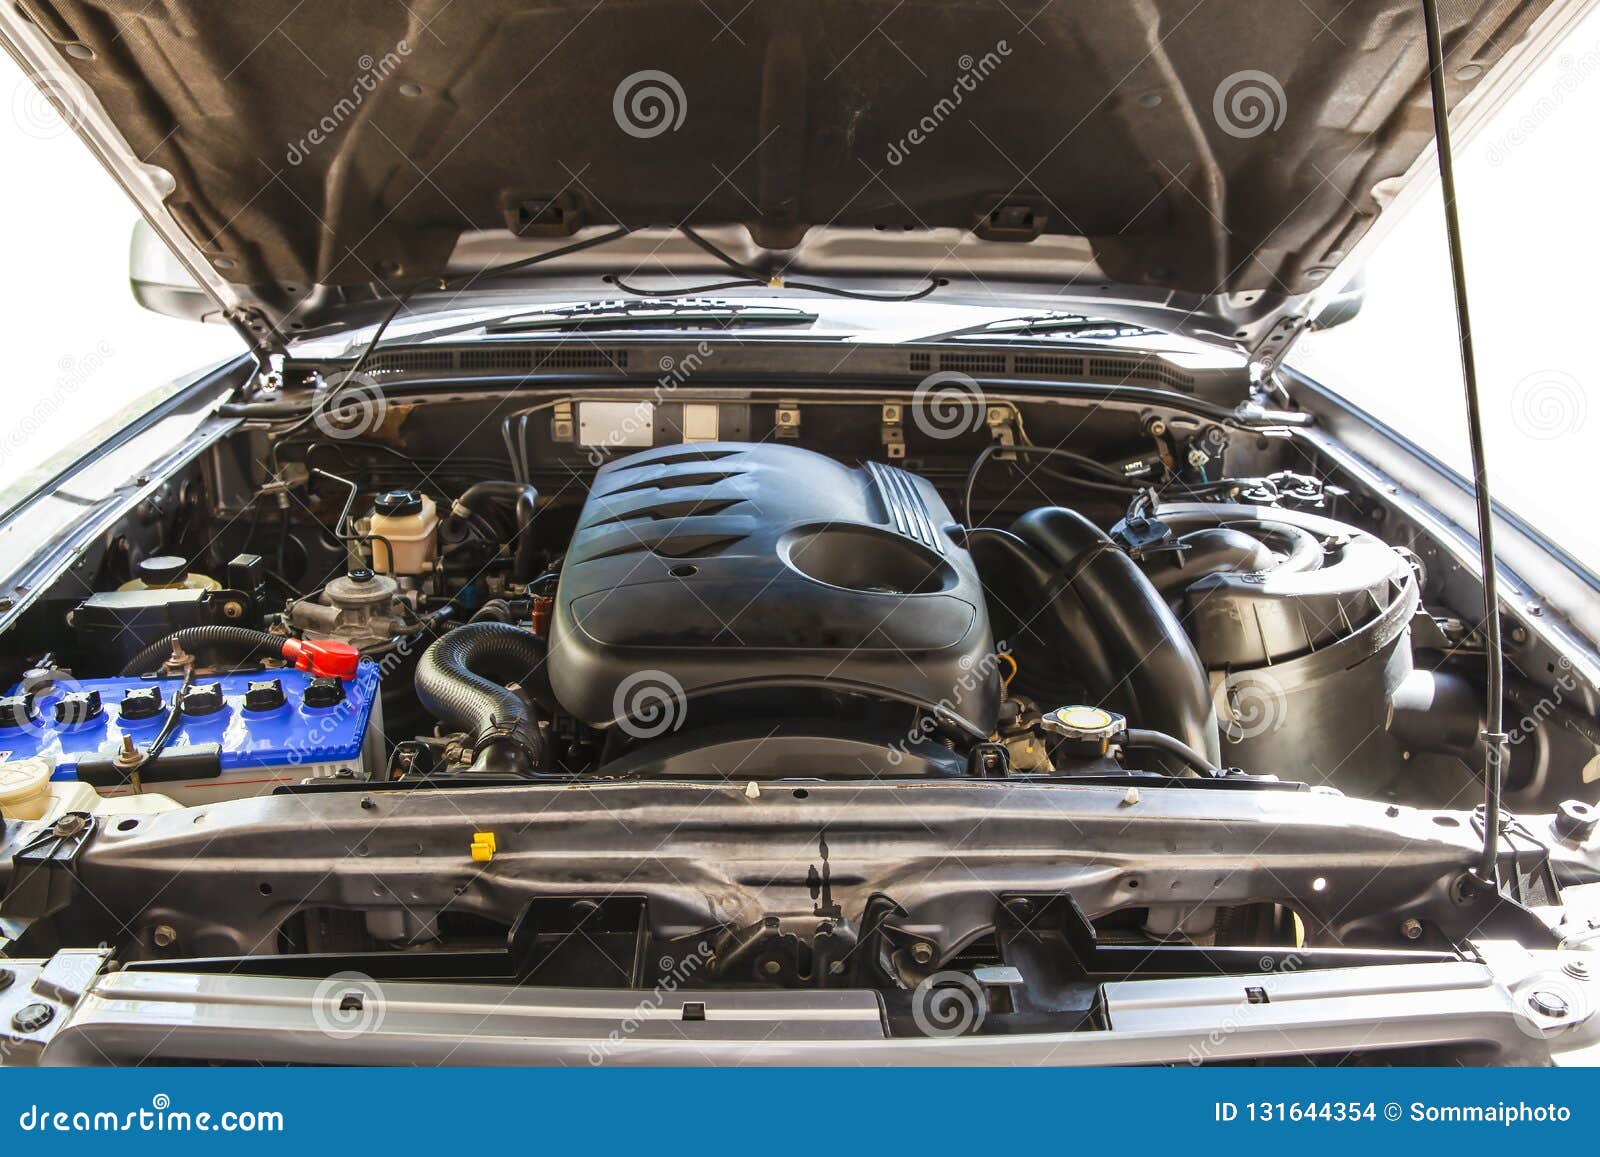 Offene Haube Auf 2500cc Diesel-Turbo-Maschinenkleintransporter Im Detail  Stockfoto - Bild von auto, sonderkommando: 131644354